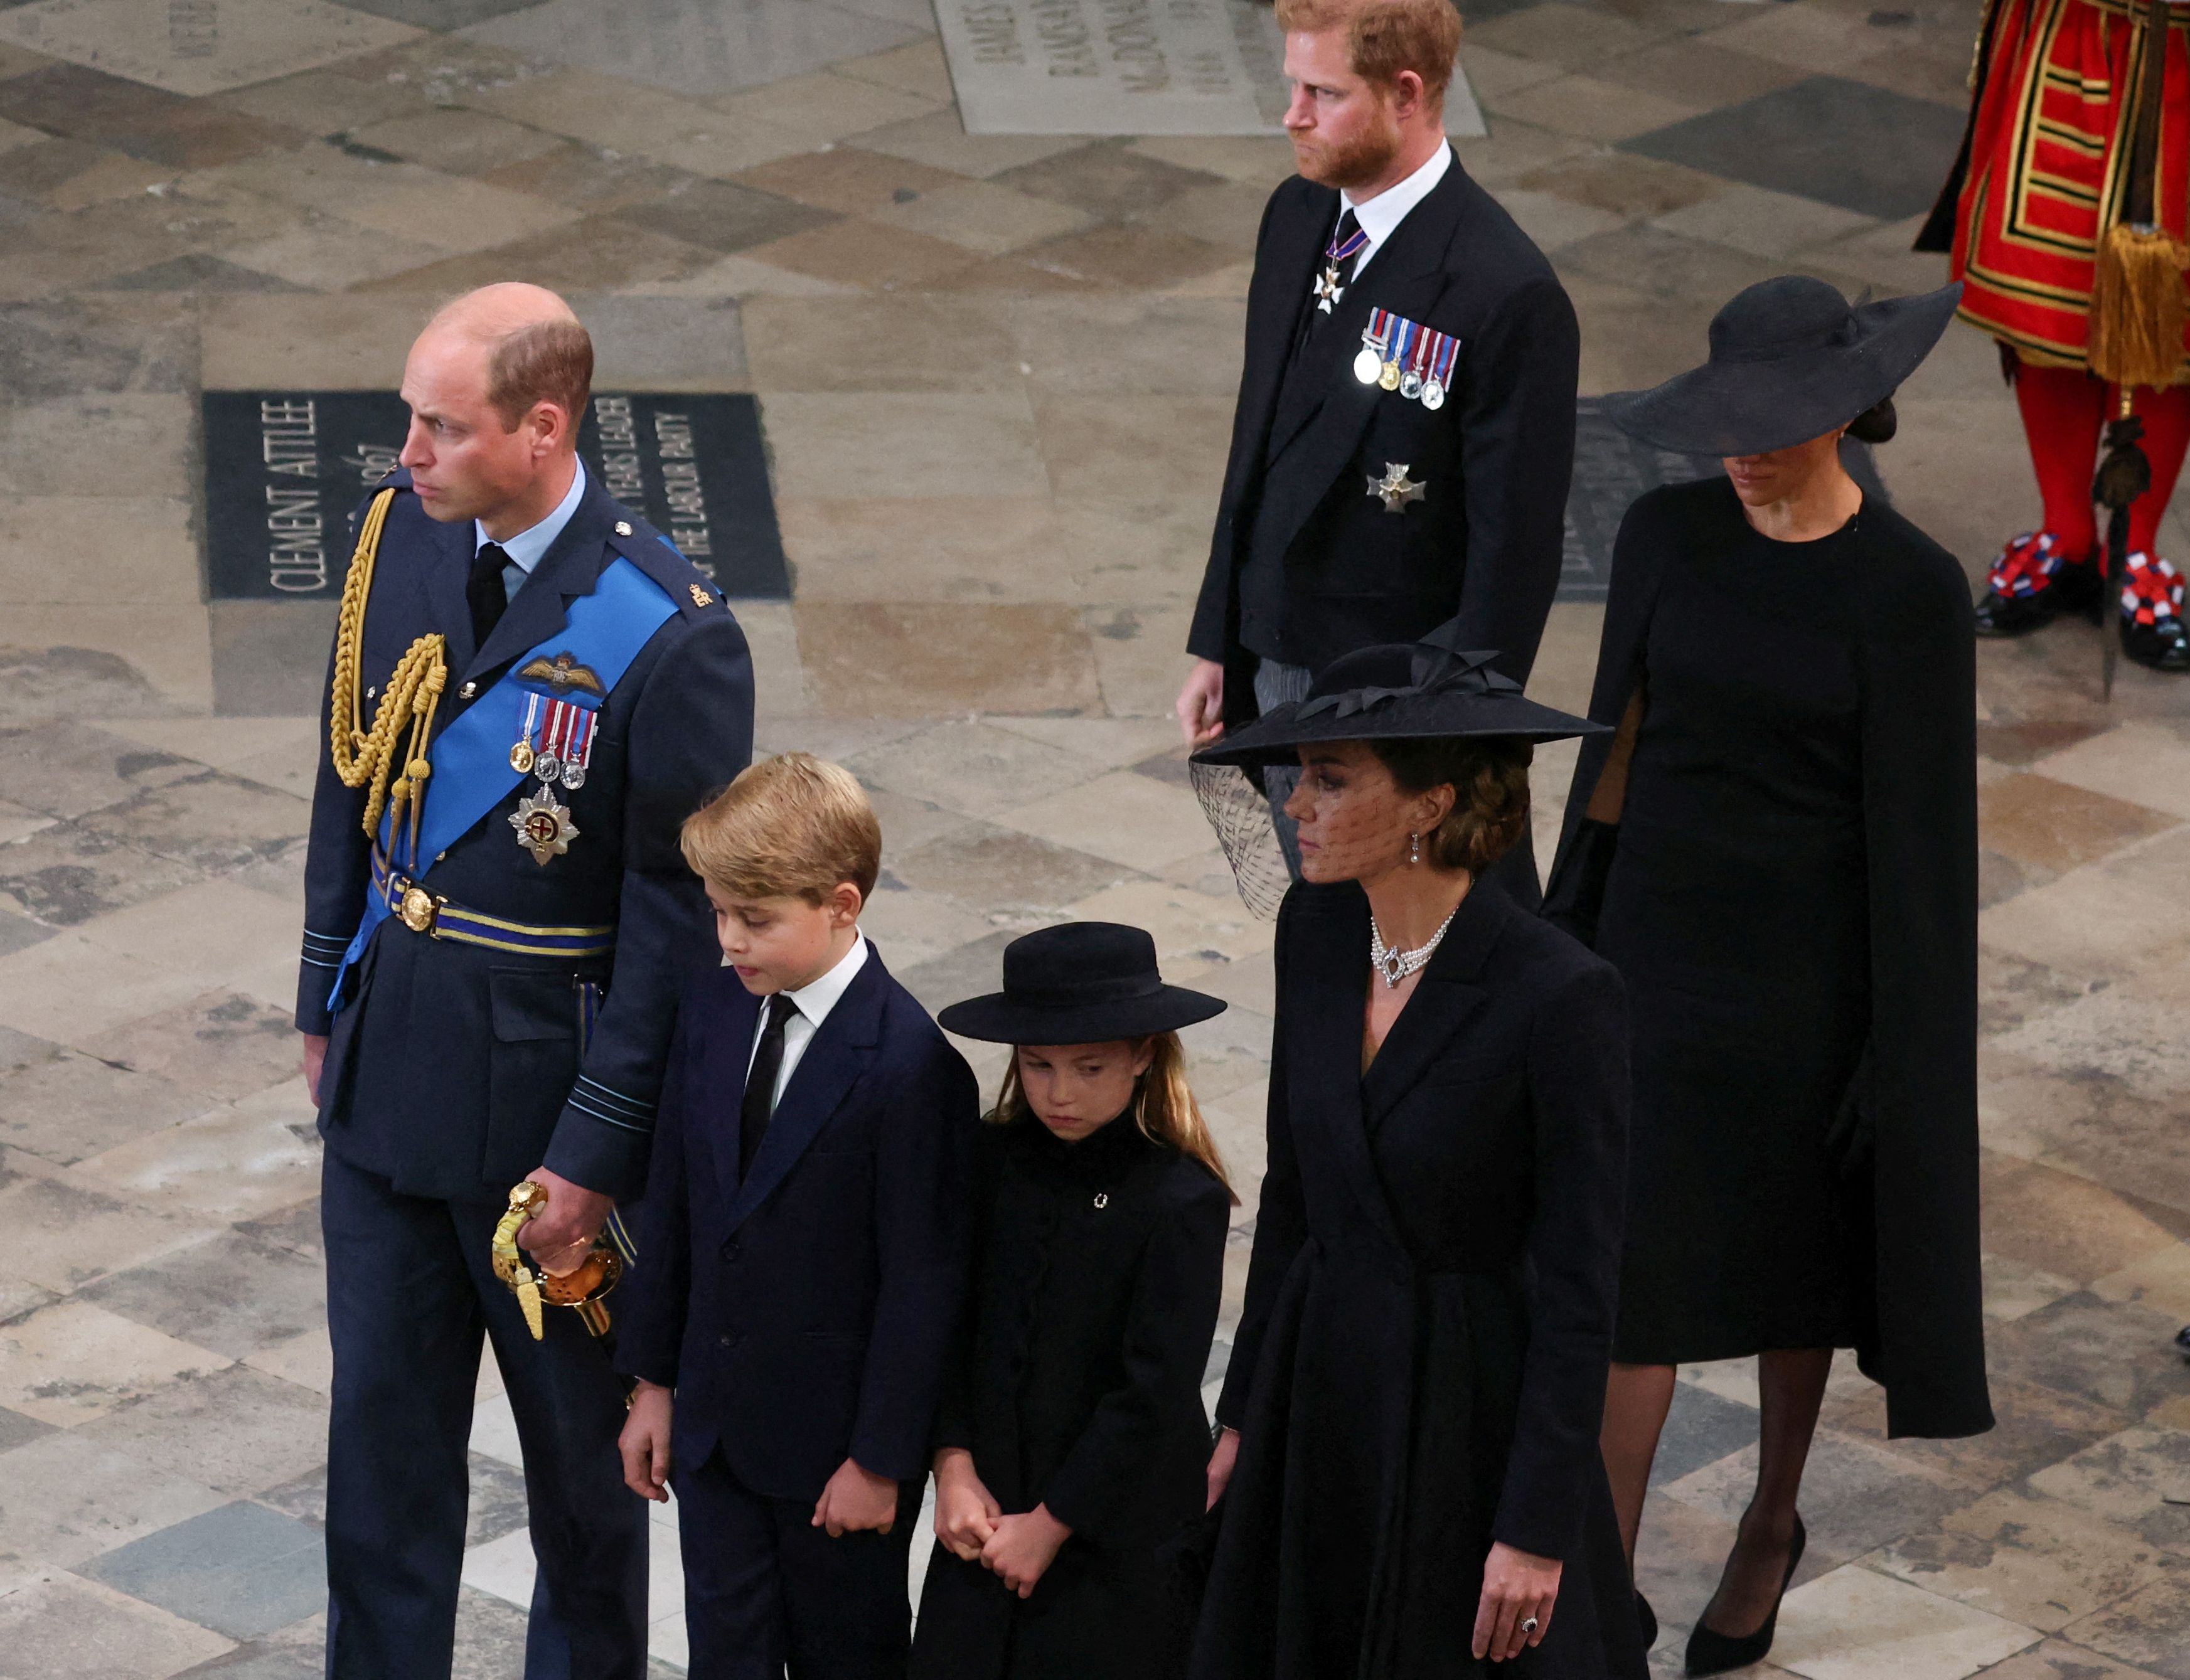 El príncipe William, el príncipe George, la princesa Charlotte, la princesa Kate, el príncipe Harry y la duquesa Meghan en el funeral de estado y entierro de la reina Elizabeth II en la Abadía de Westminster en Londres, Gran Bretaña, el 19 de septiembre de 2022 | Foto: Getty Images